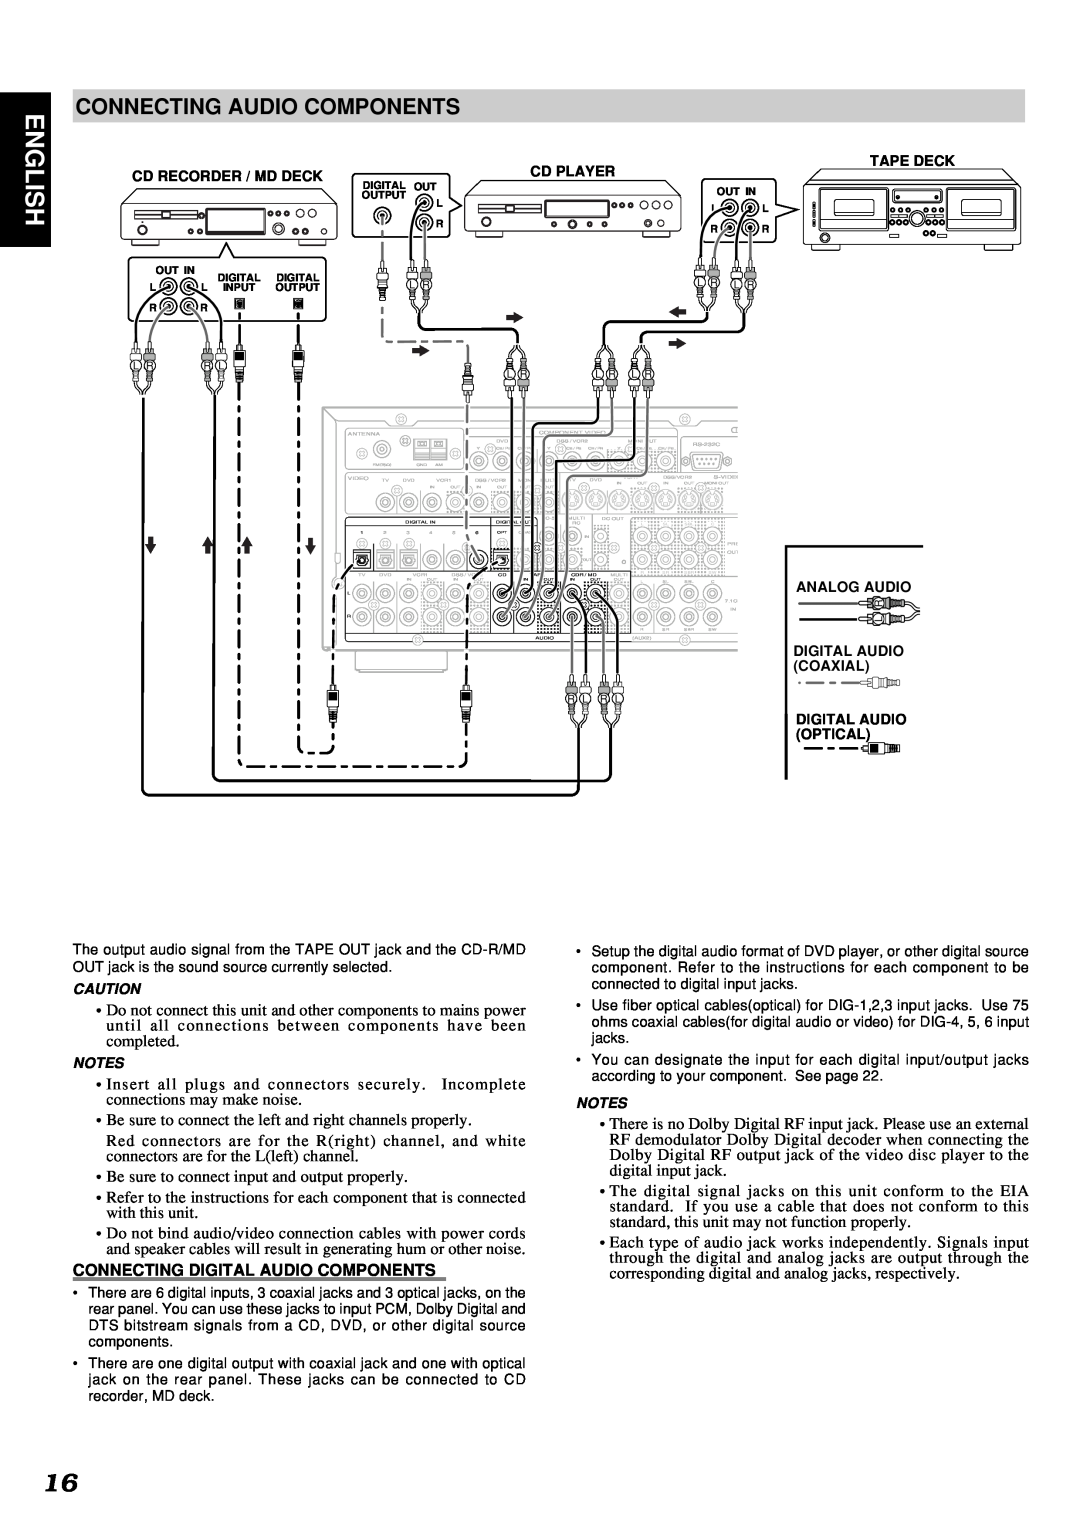 Marantz SR7300 manual English, Connecting Audio Components, Connecting Digital Audio Components 